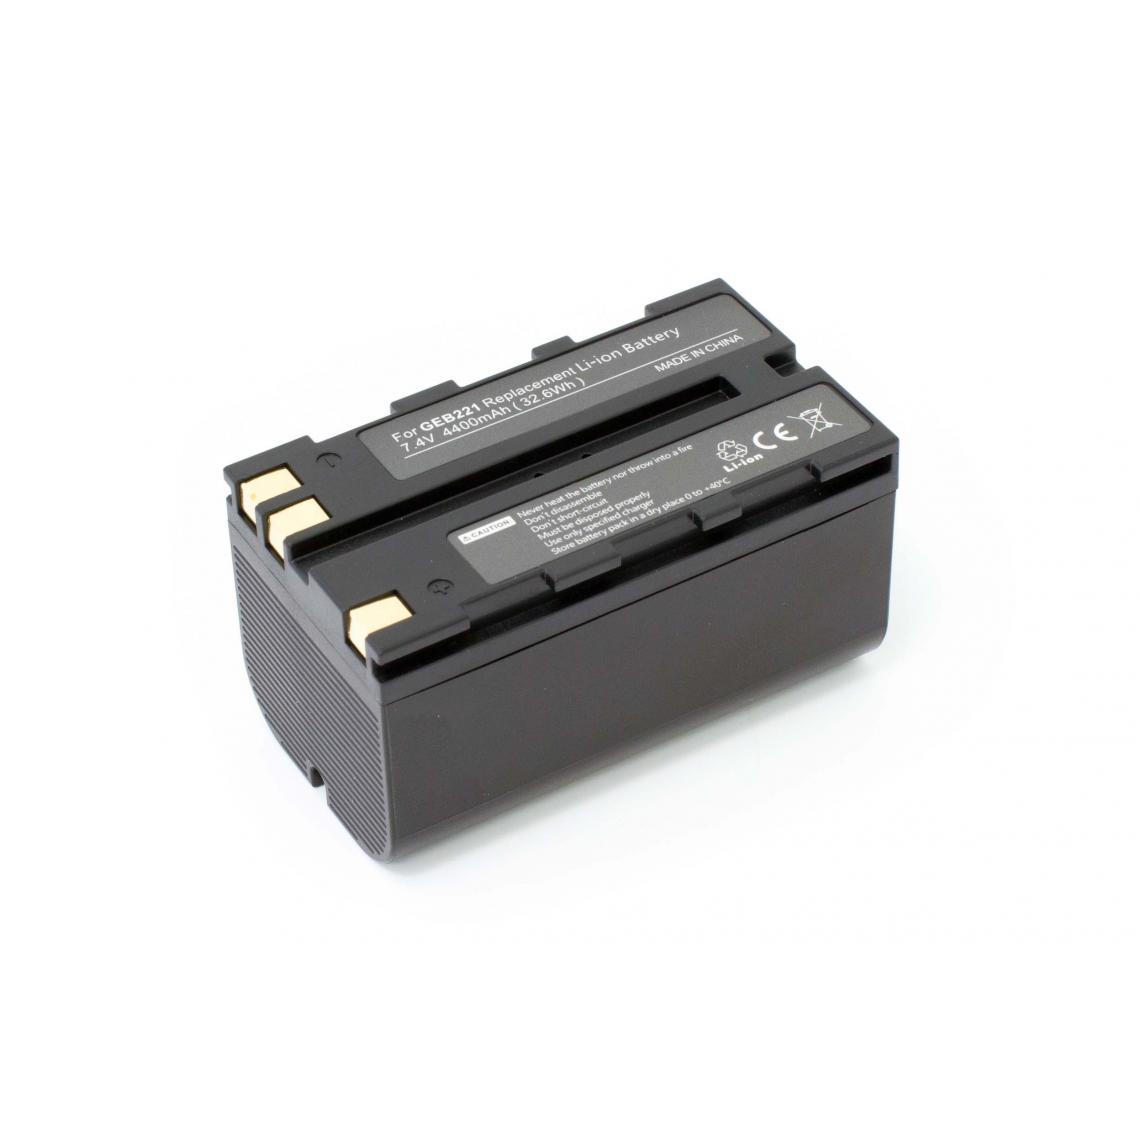 Vhbw - vhbw batterie compatible avec Geomax Zenith 10, 20, 25 appareil photo DSLR (4400mAh, 7,4V, Li-Ion) - Piles rechargeables